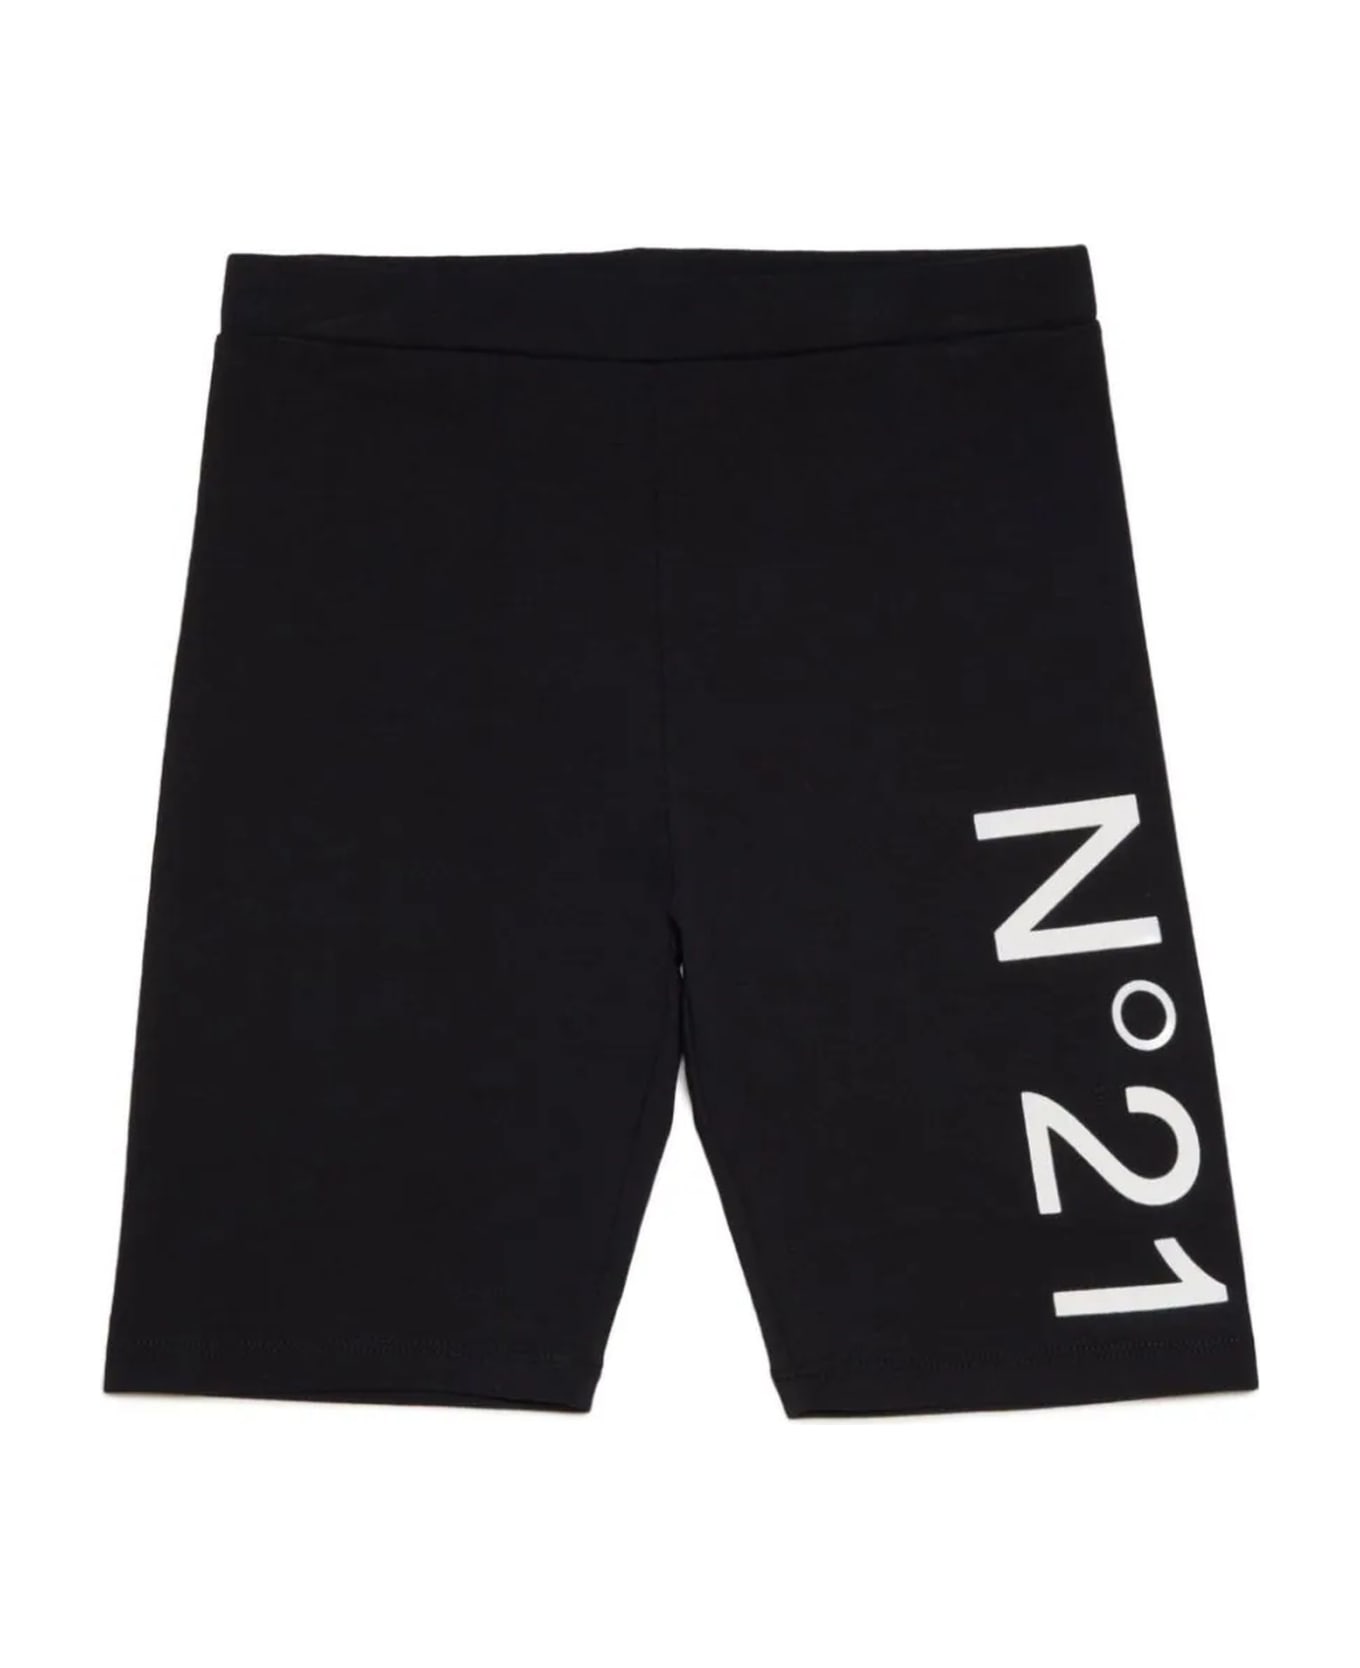 N.21 N°21 Trousers Black - Black